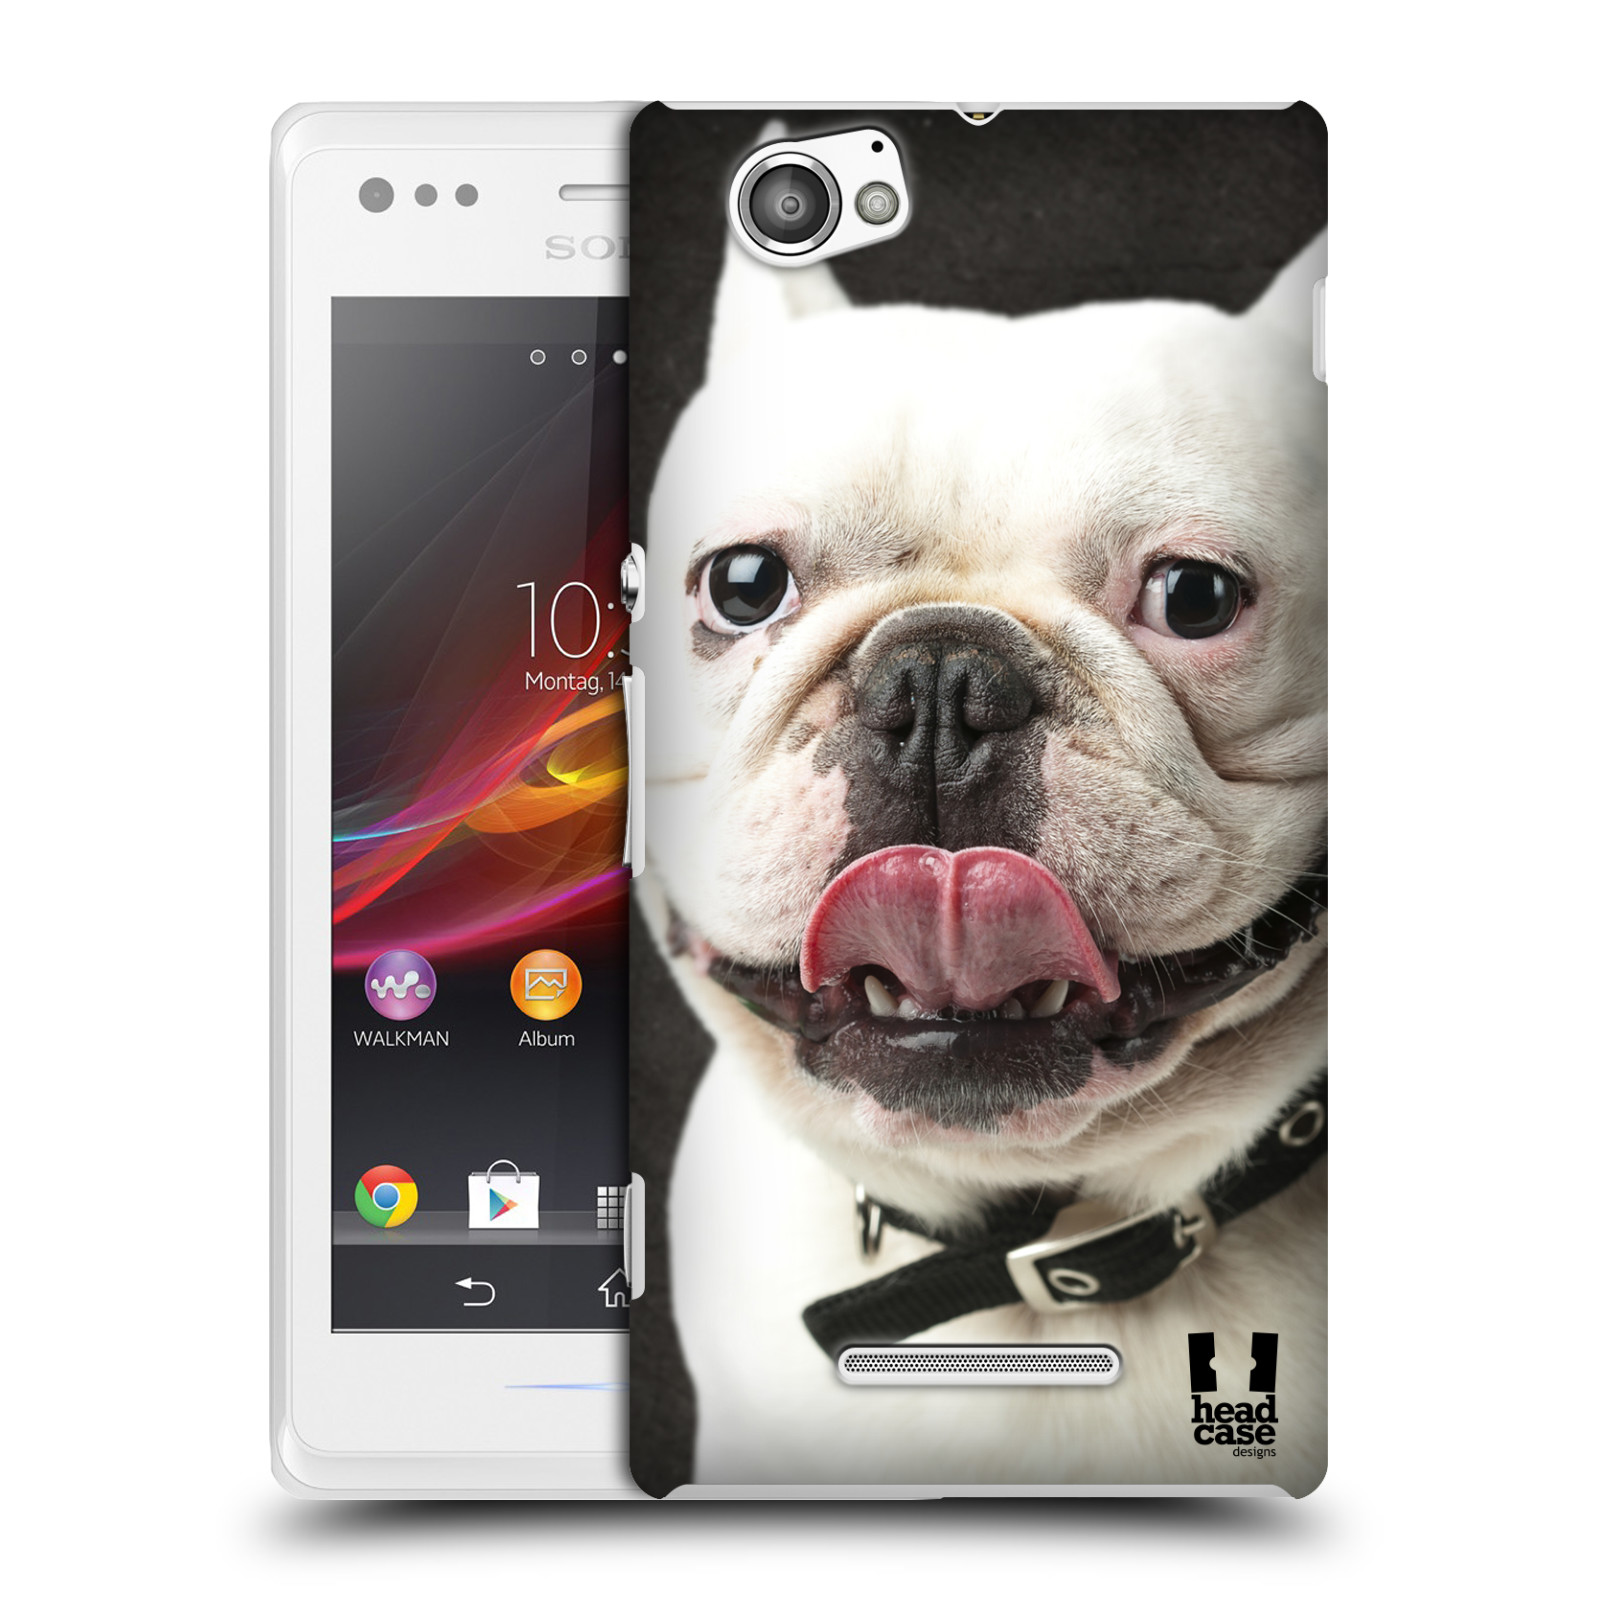 HEAD CASE plastový obal na mobil Sony Xperia M vzor Legrační zvířátka pejsek s vyplazeným jazykem BULDOK